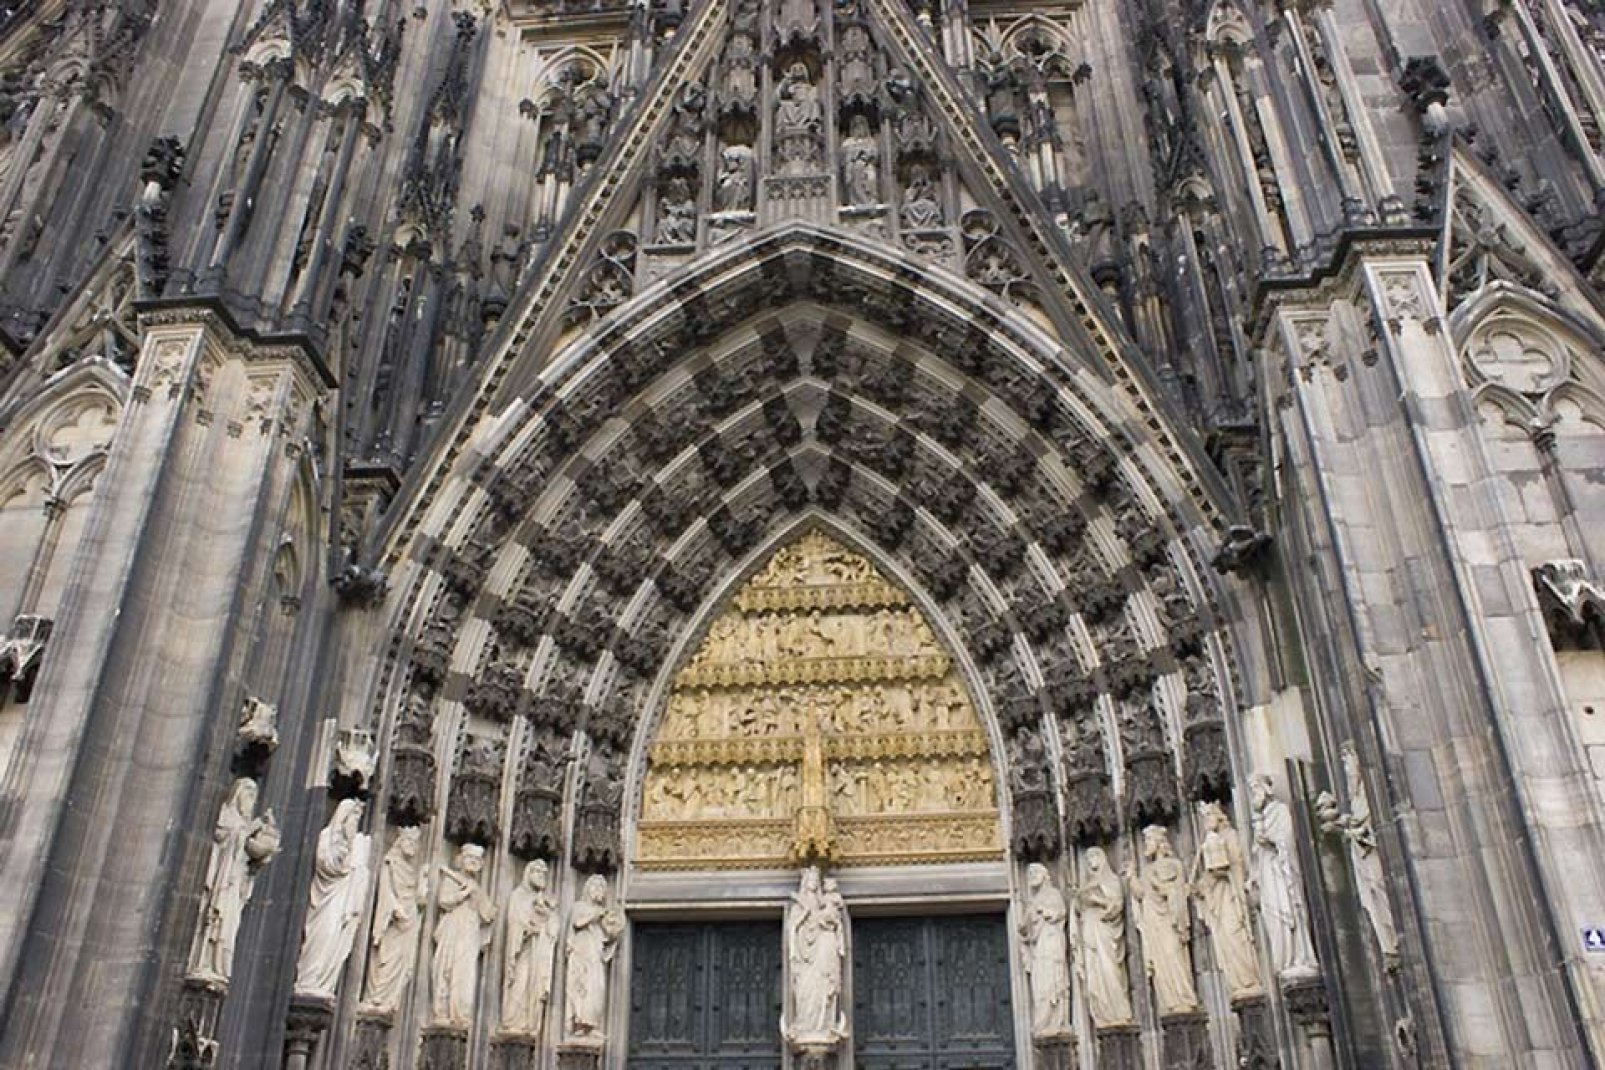 Der Kölner Dom ist eine der weltweit grössten Kathedralen im gotischen Baustil